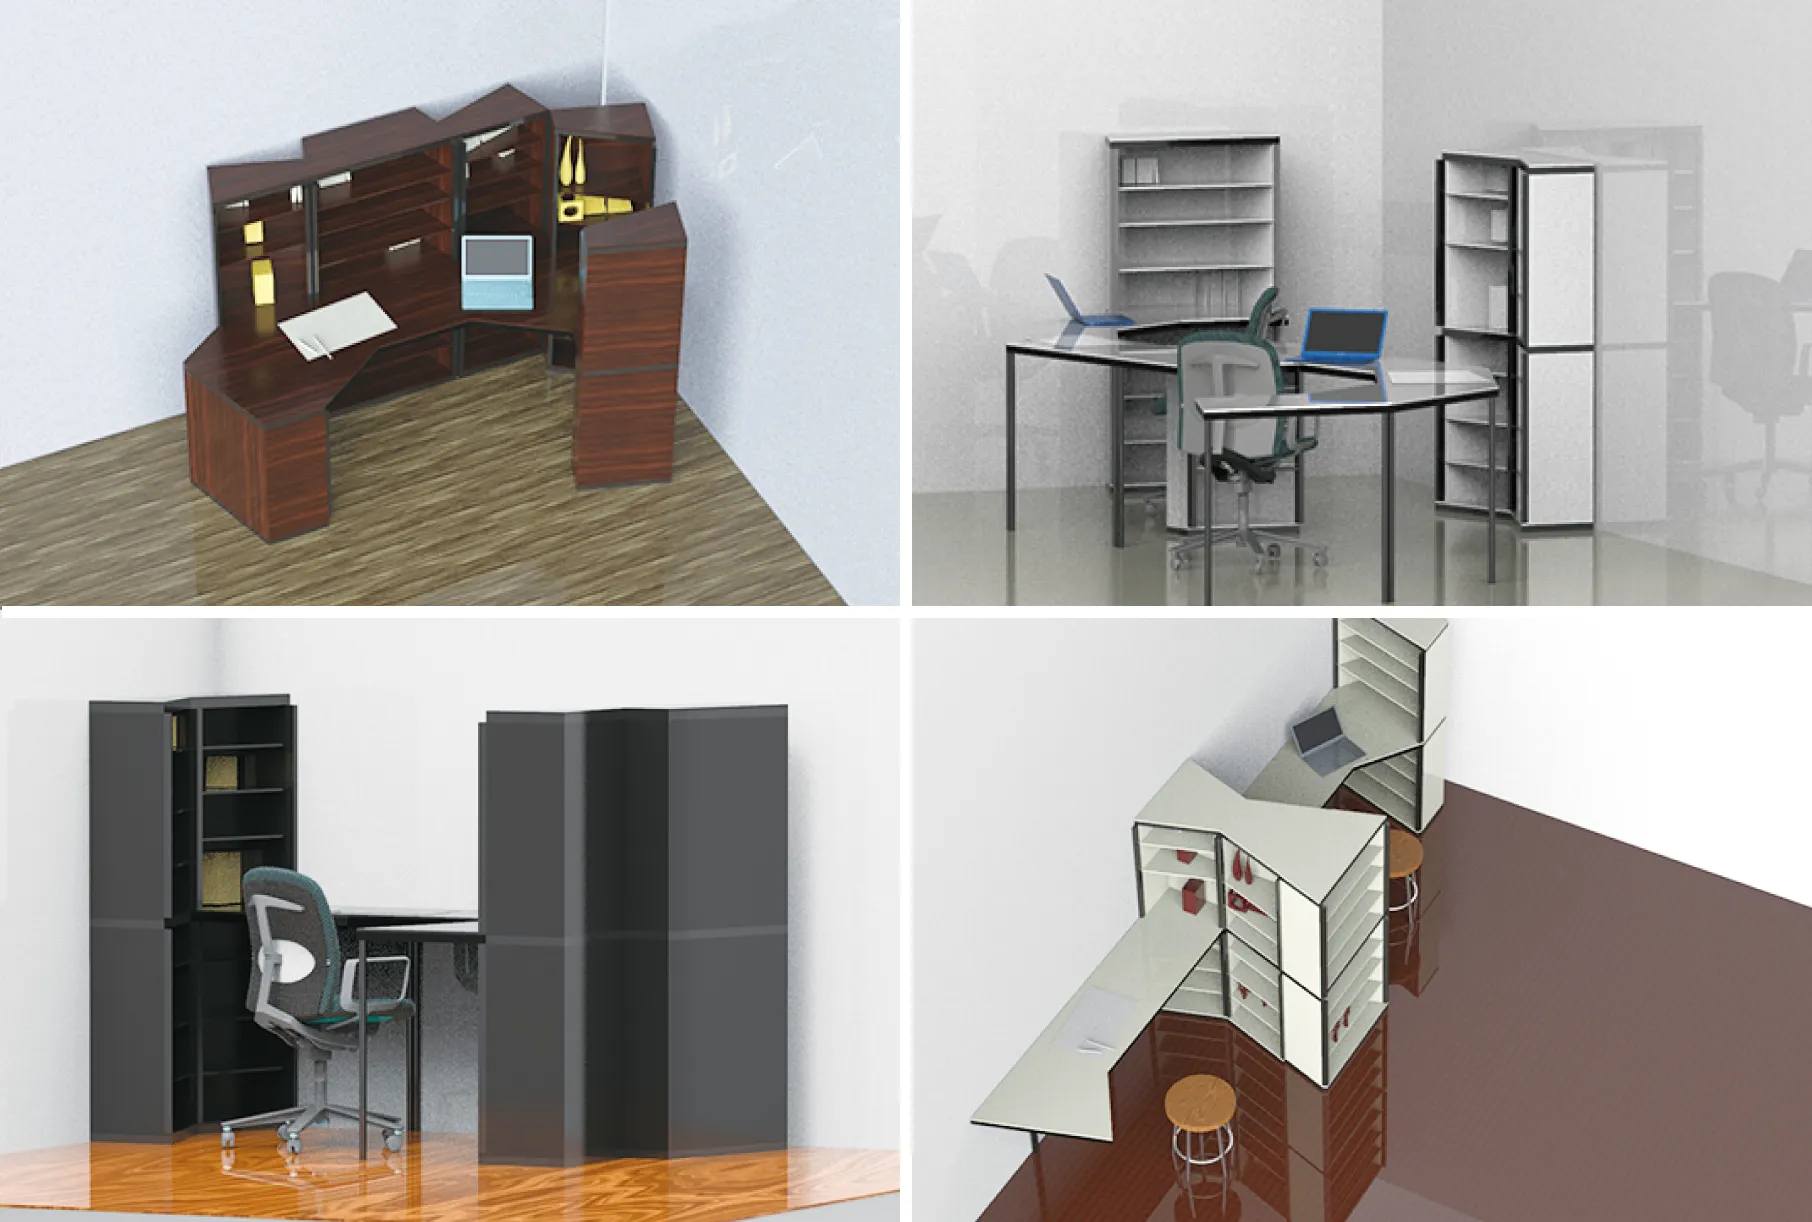 デスクと2種類の棚でカスタマイズの楽しさを提案した作品「Re:Desk」（3年次）